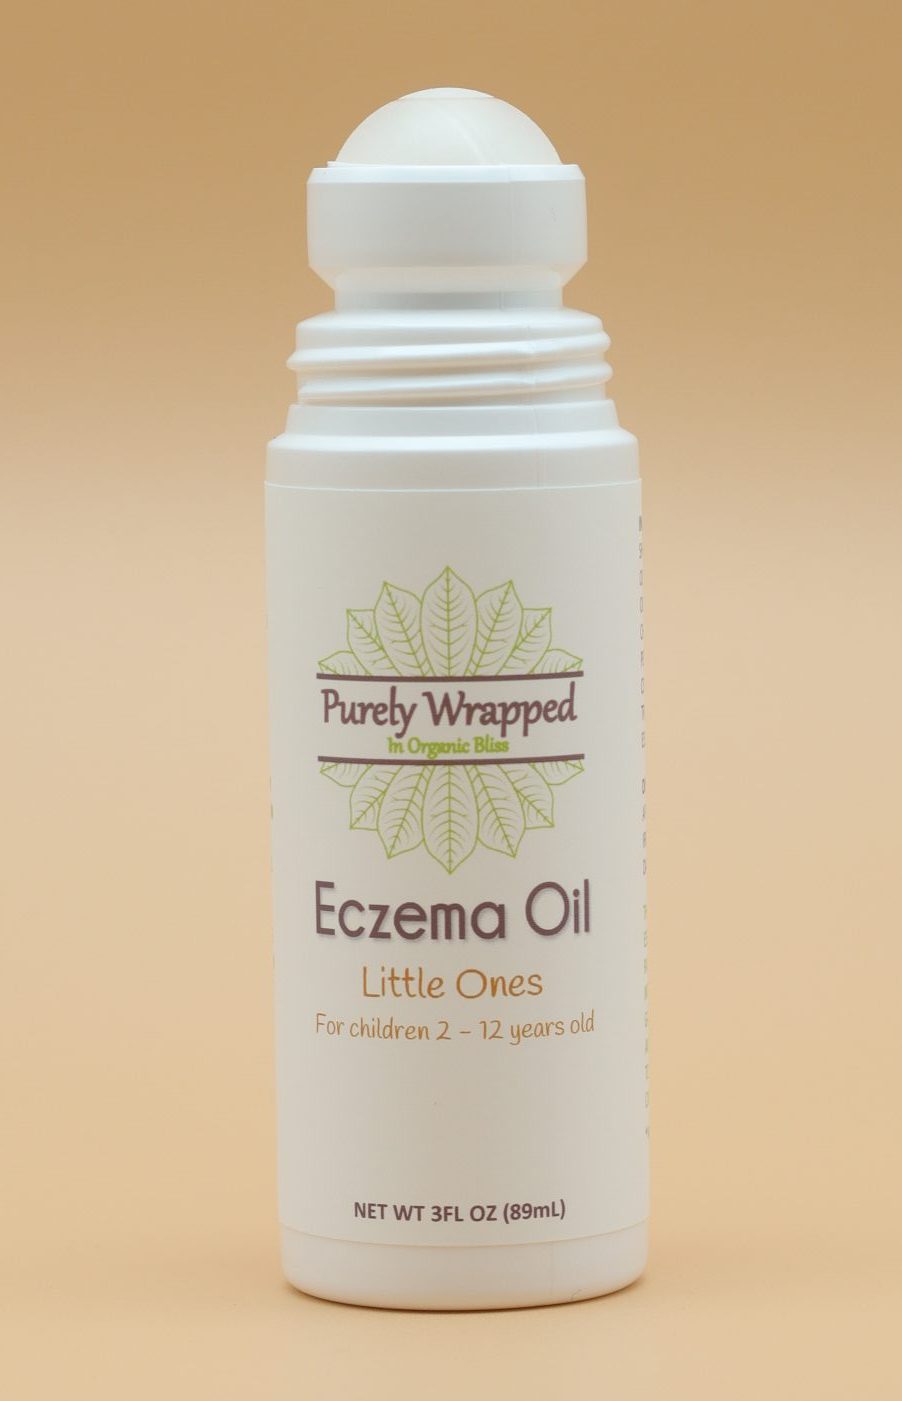 Eczema Oil Little Ones - Open Bottle